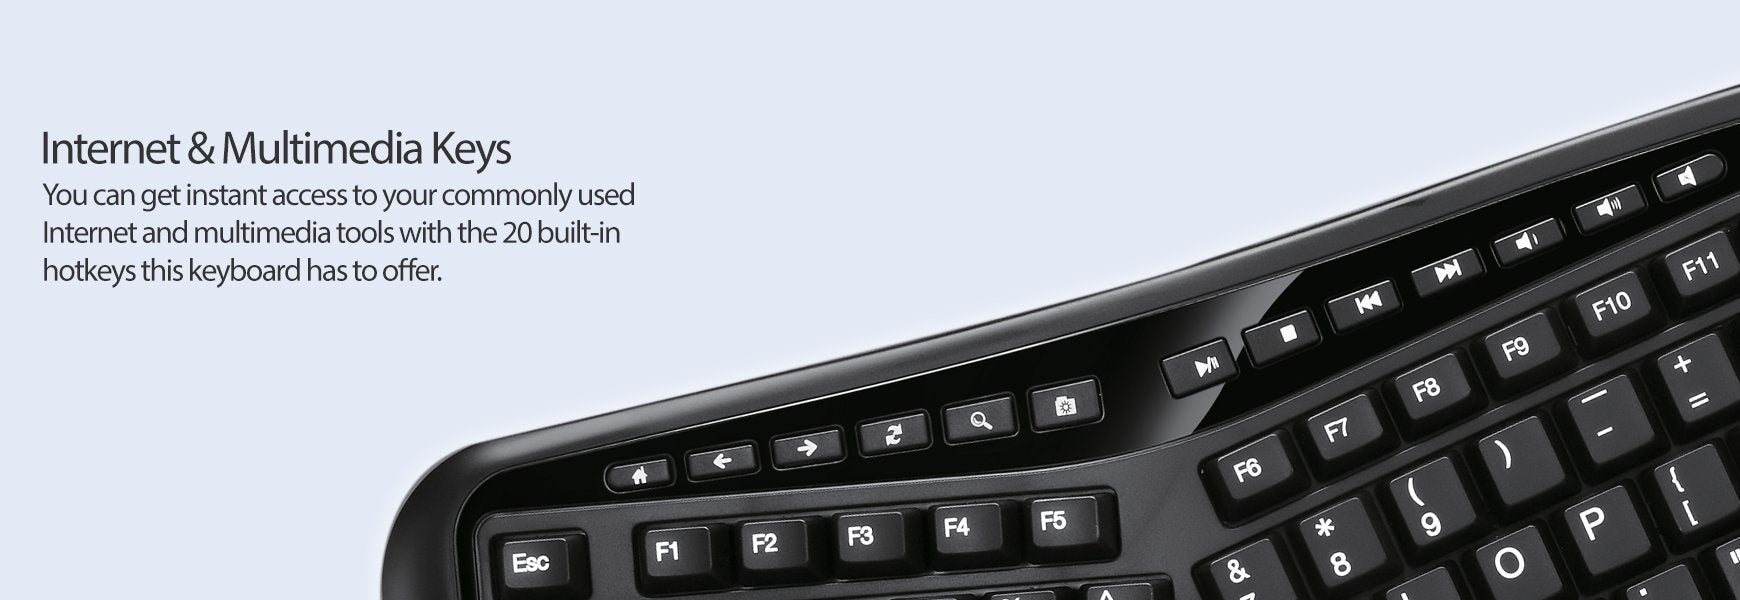 Adesso Tru-Form 4500 - 2.4GHz Wireless Ergonomic Touchpad Keyboard